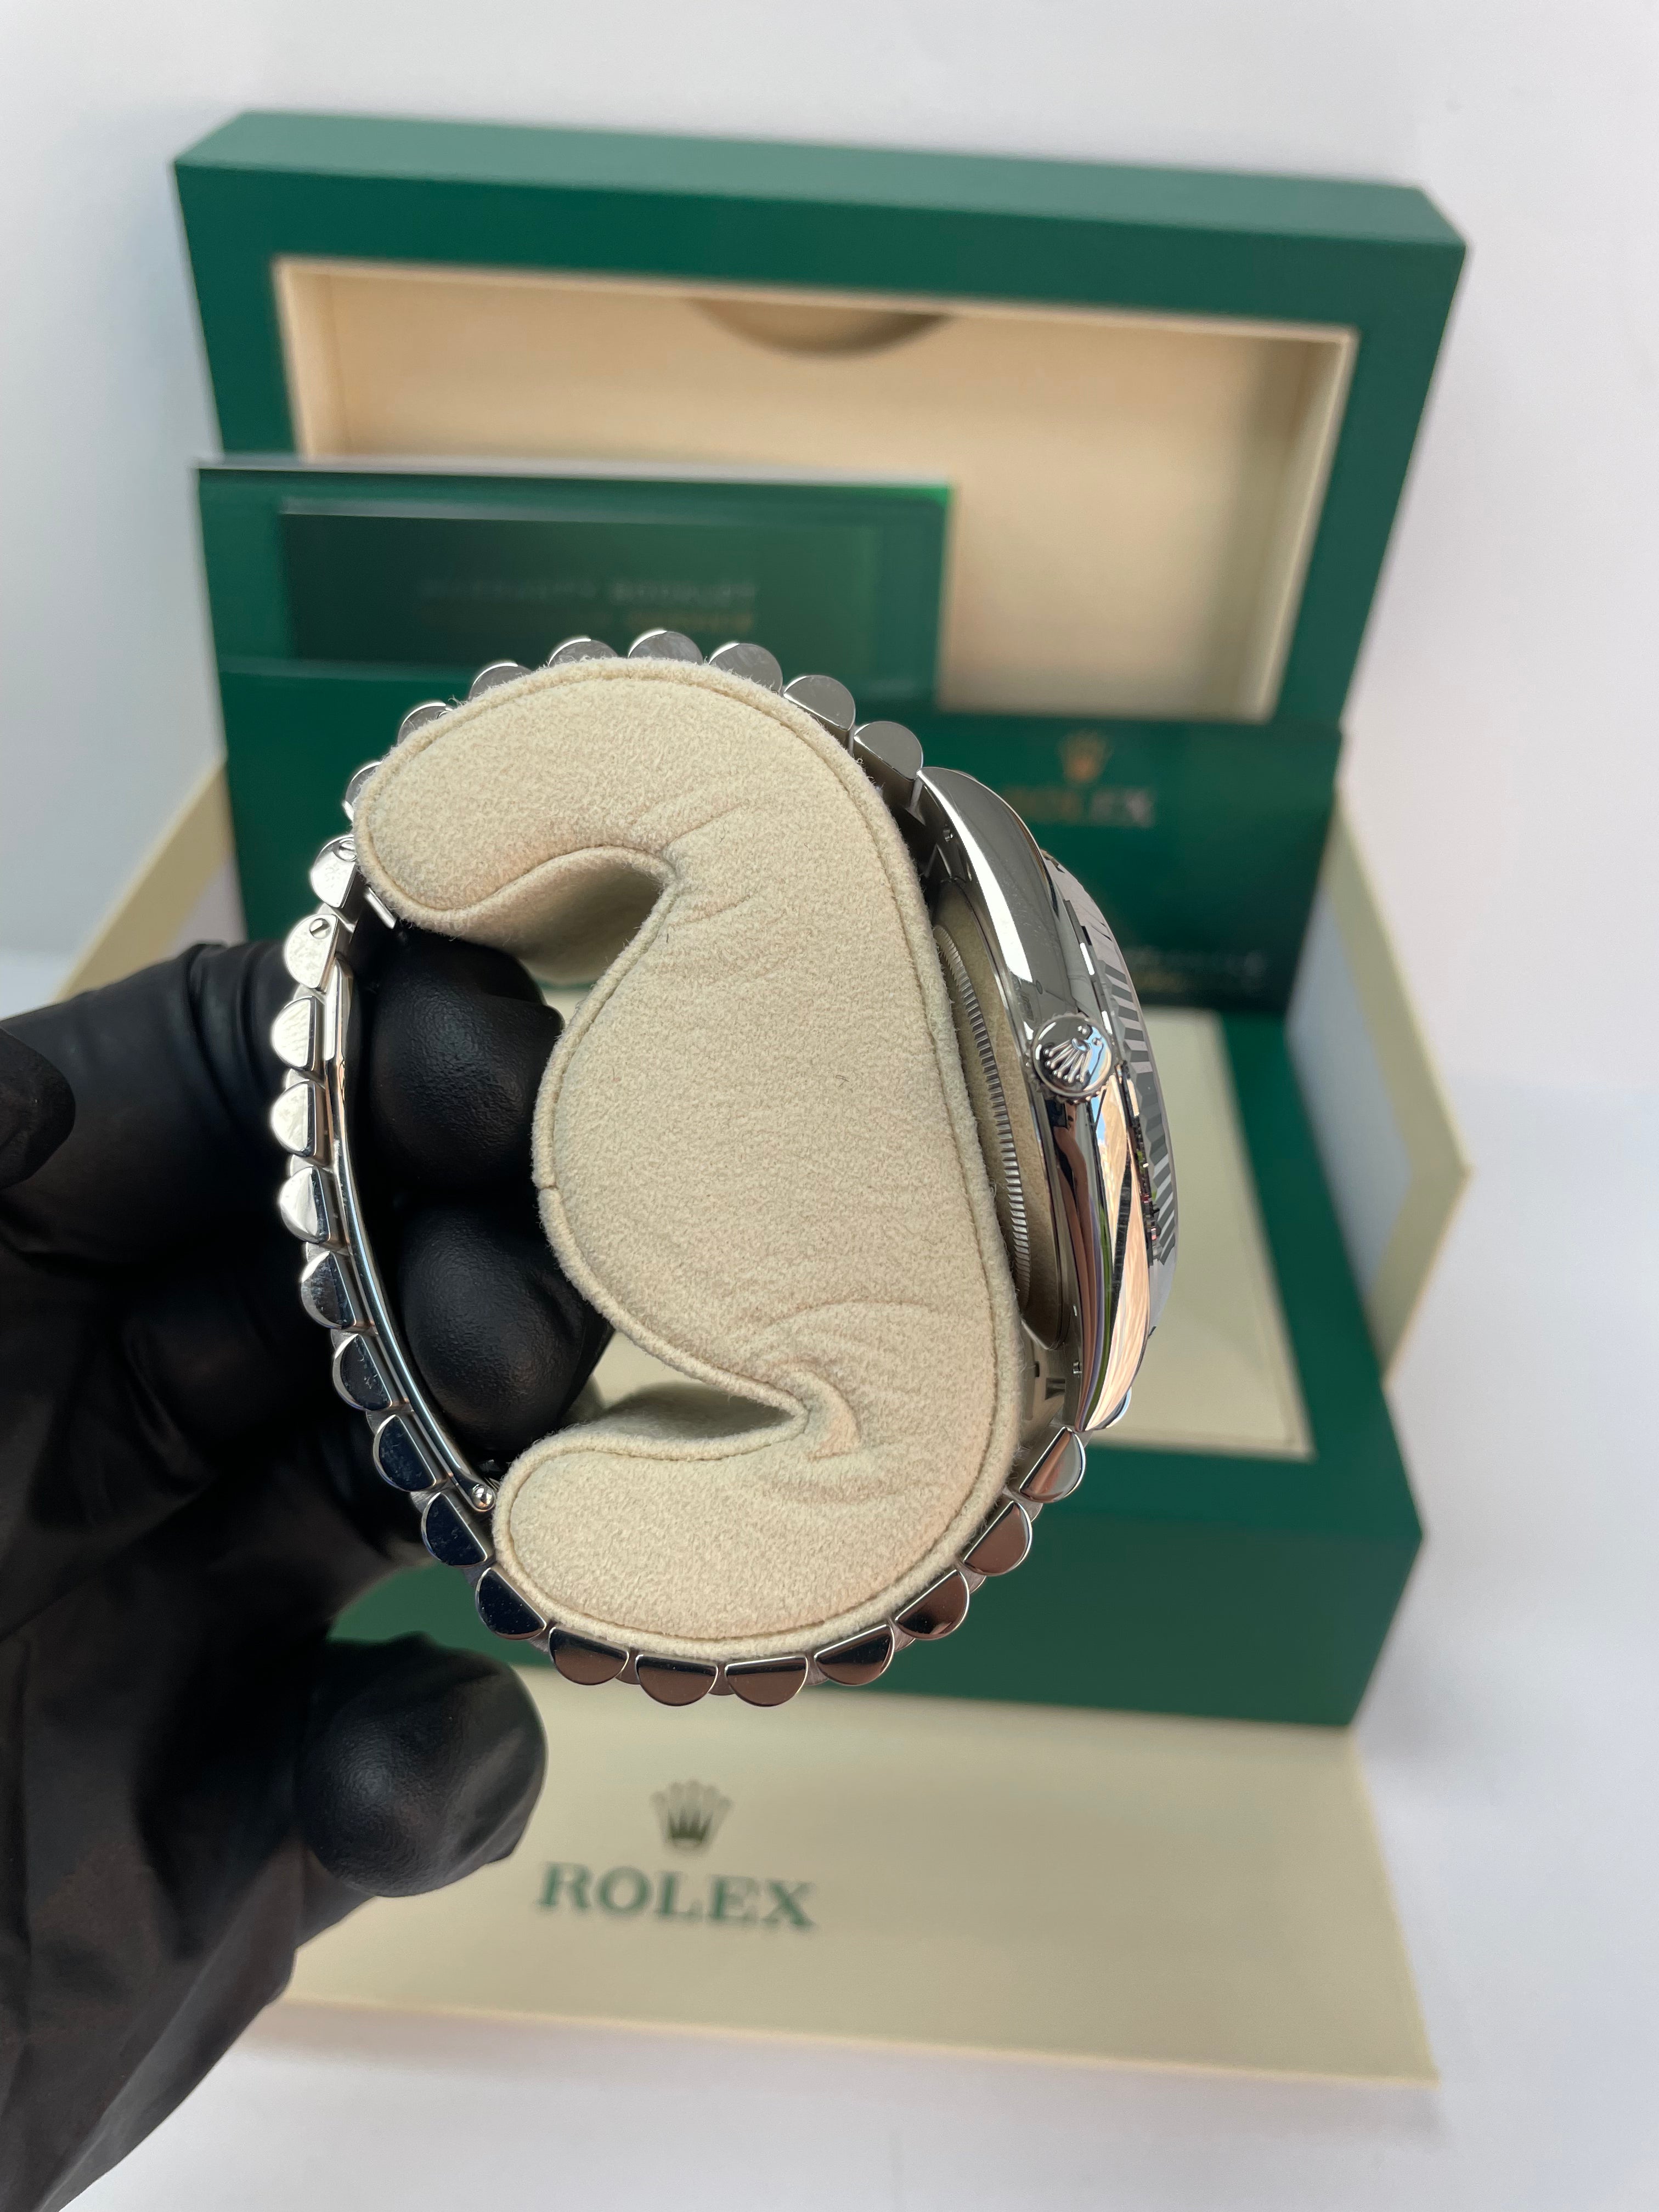 Rolex Day-Date 40 White Gold - White Roman Dial - Fluted Bezel - President Bracelet (Ref: 228239)